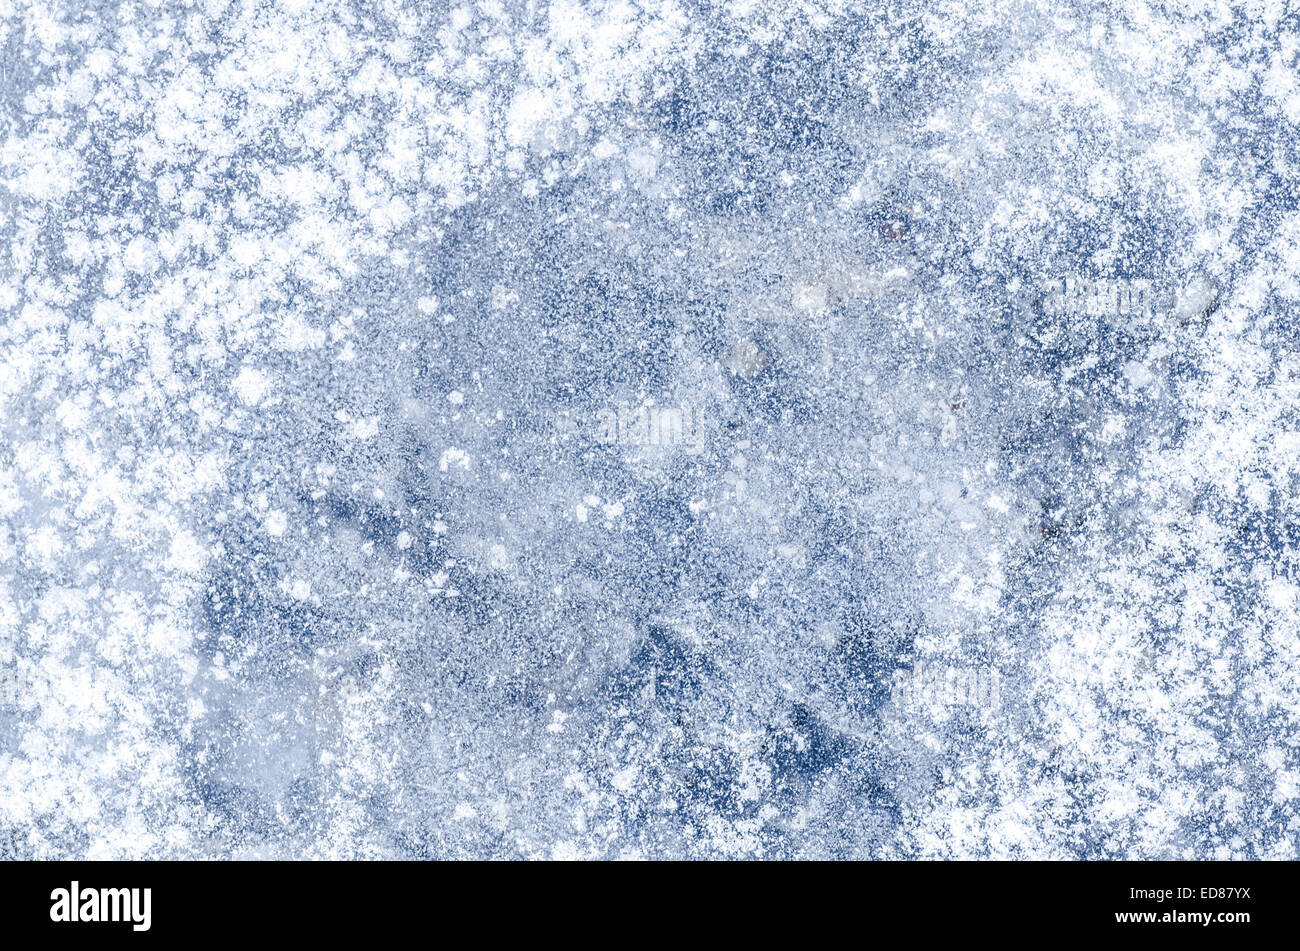 white snowflakes on blue  ice Stock Photo